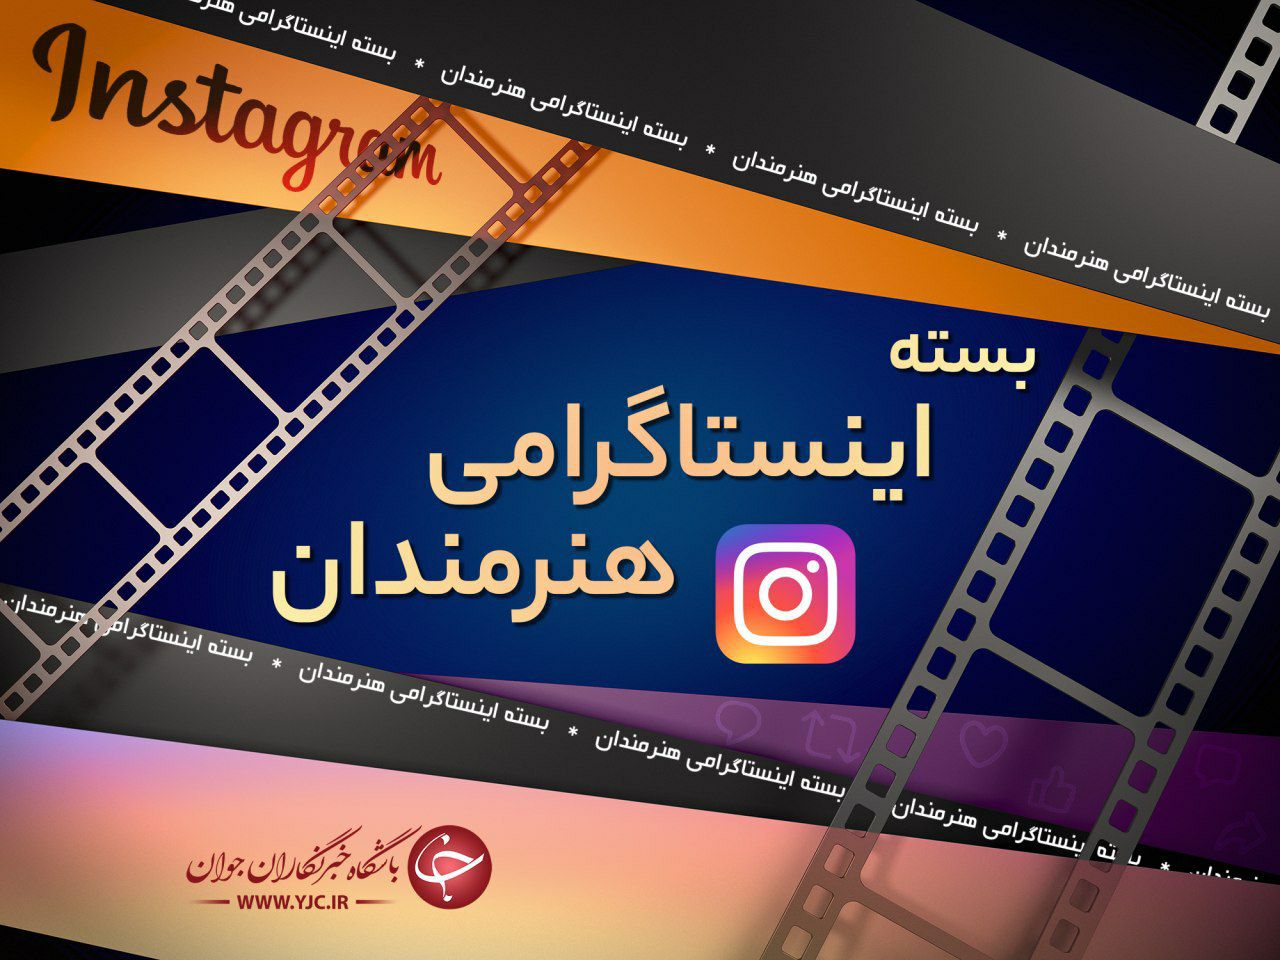 محسن کیایی از گریم جدید و عجیبش رونمایی کرد/ ویدئویی طنز و جالب از حبیب لیسانسه‌ها در ارتباط با مصرف ضدعفونی‌کننده